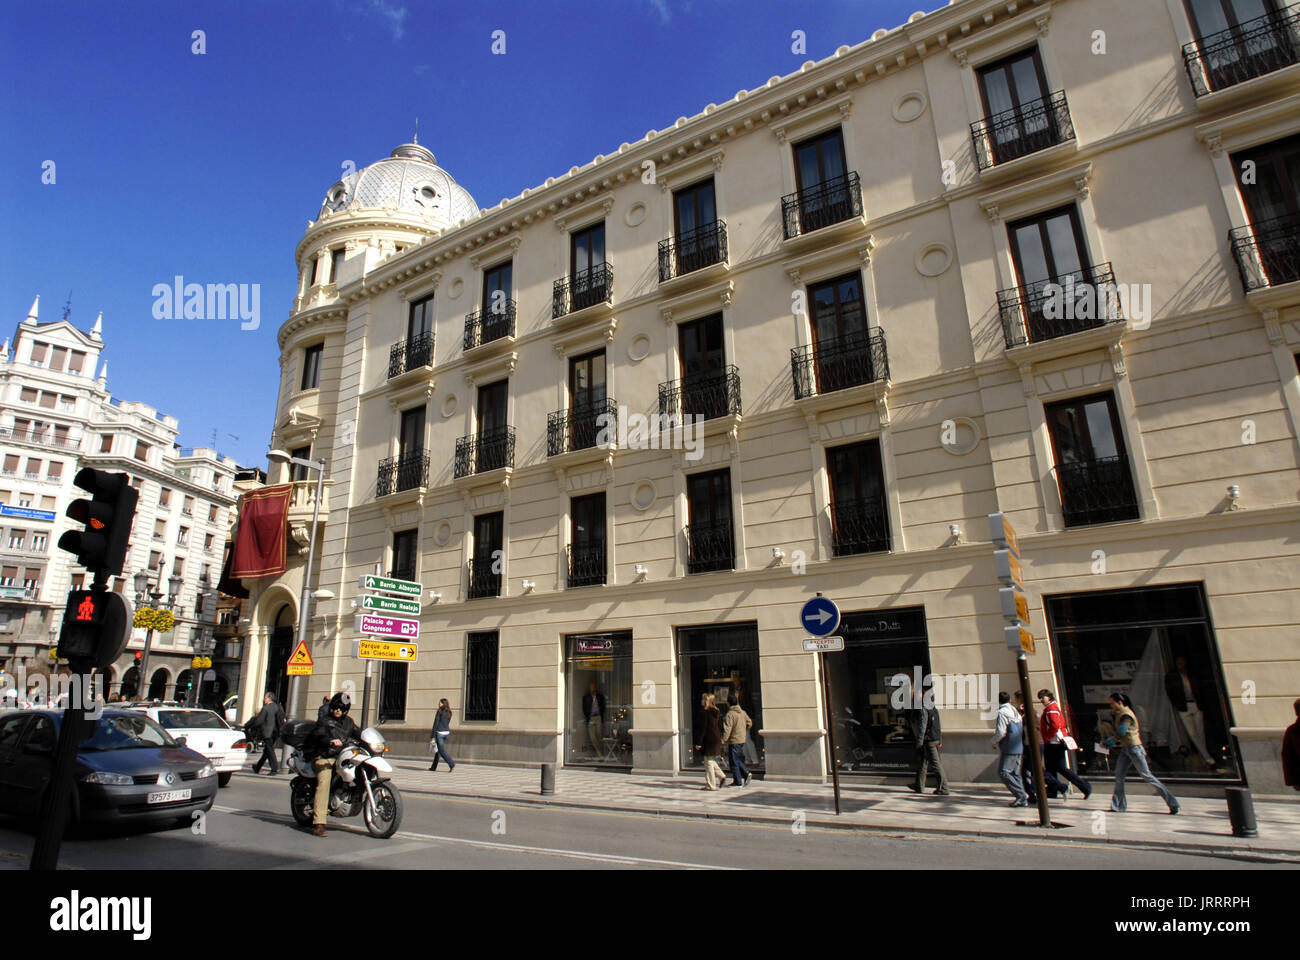 Recogidas Street und Gebäude des NH Victoria Hotel in Puerta Real, Stadt Granada, Granada, Andalusien, Spanien (Andalusien), Spanien, Europa. Stockfoto